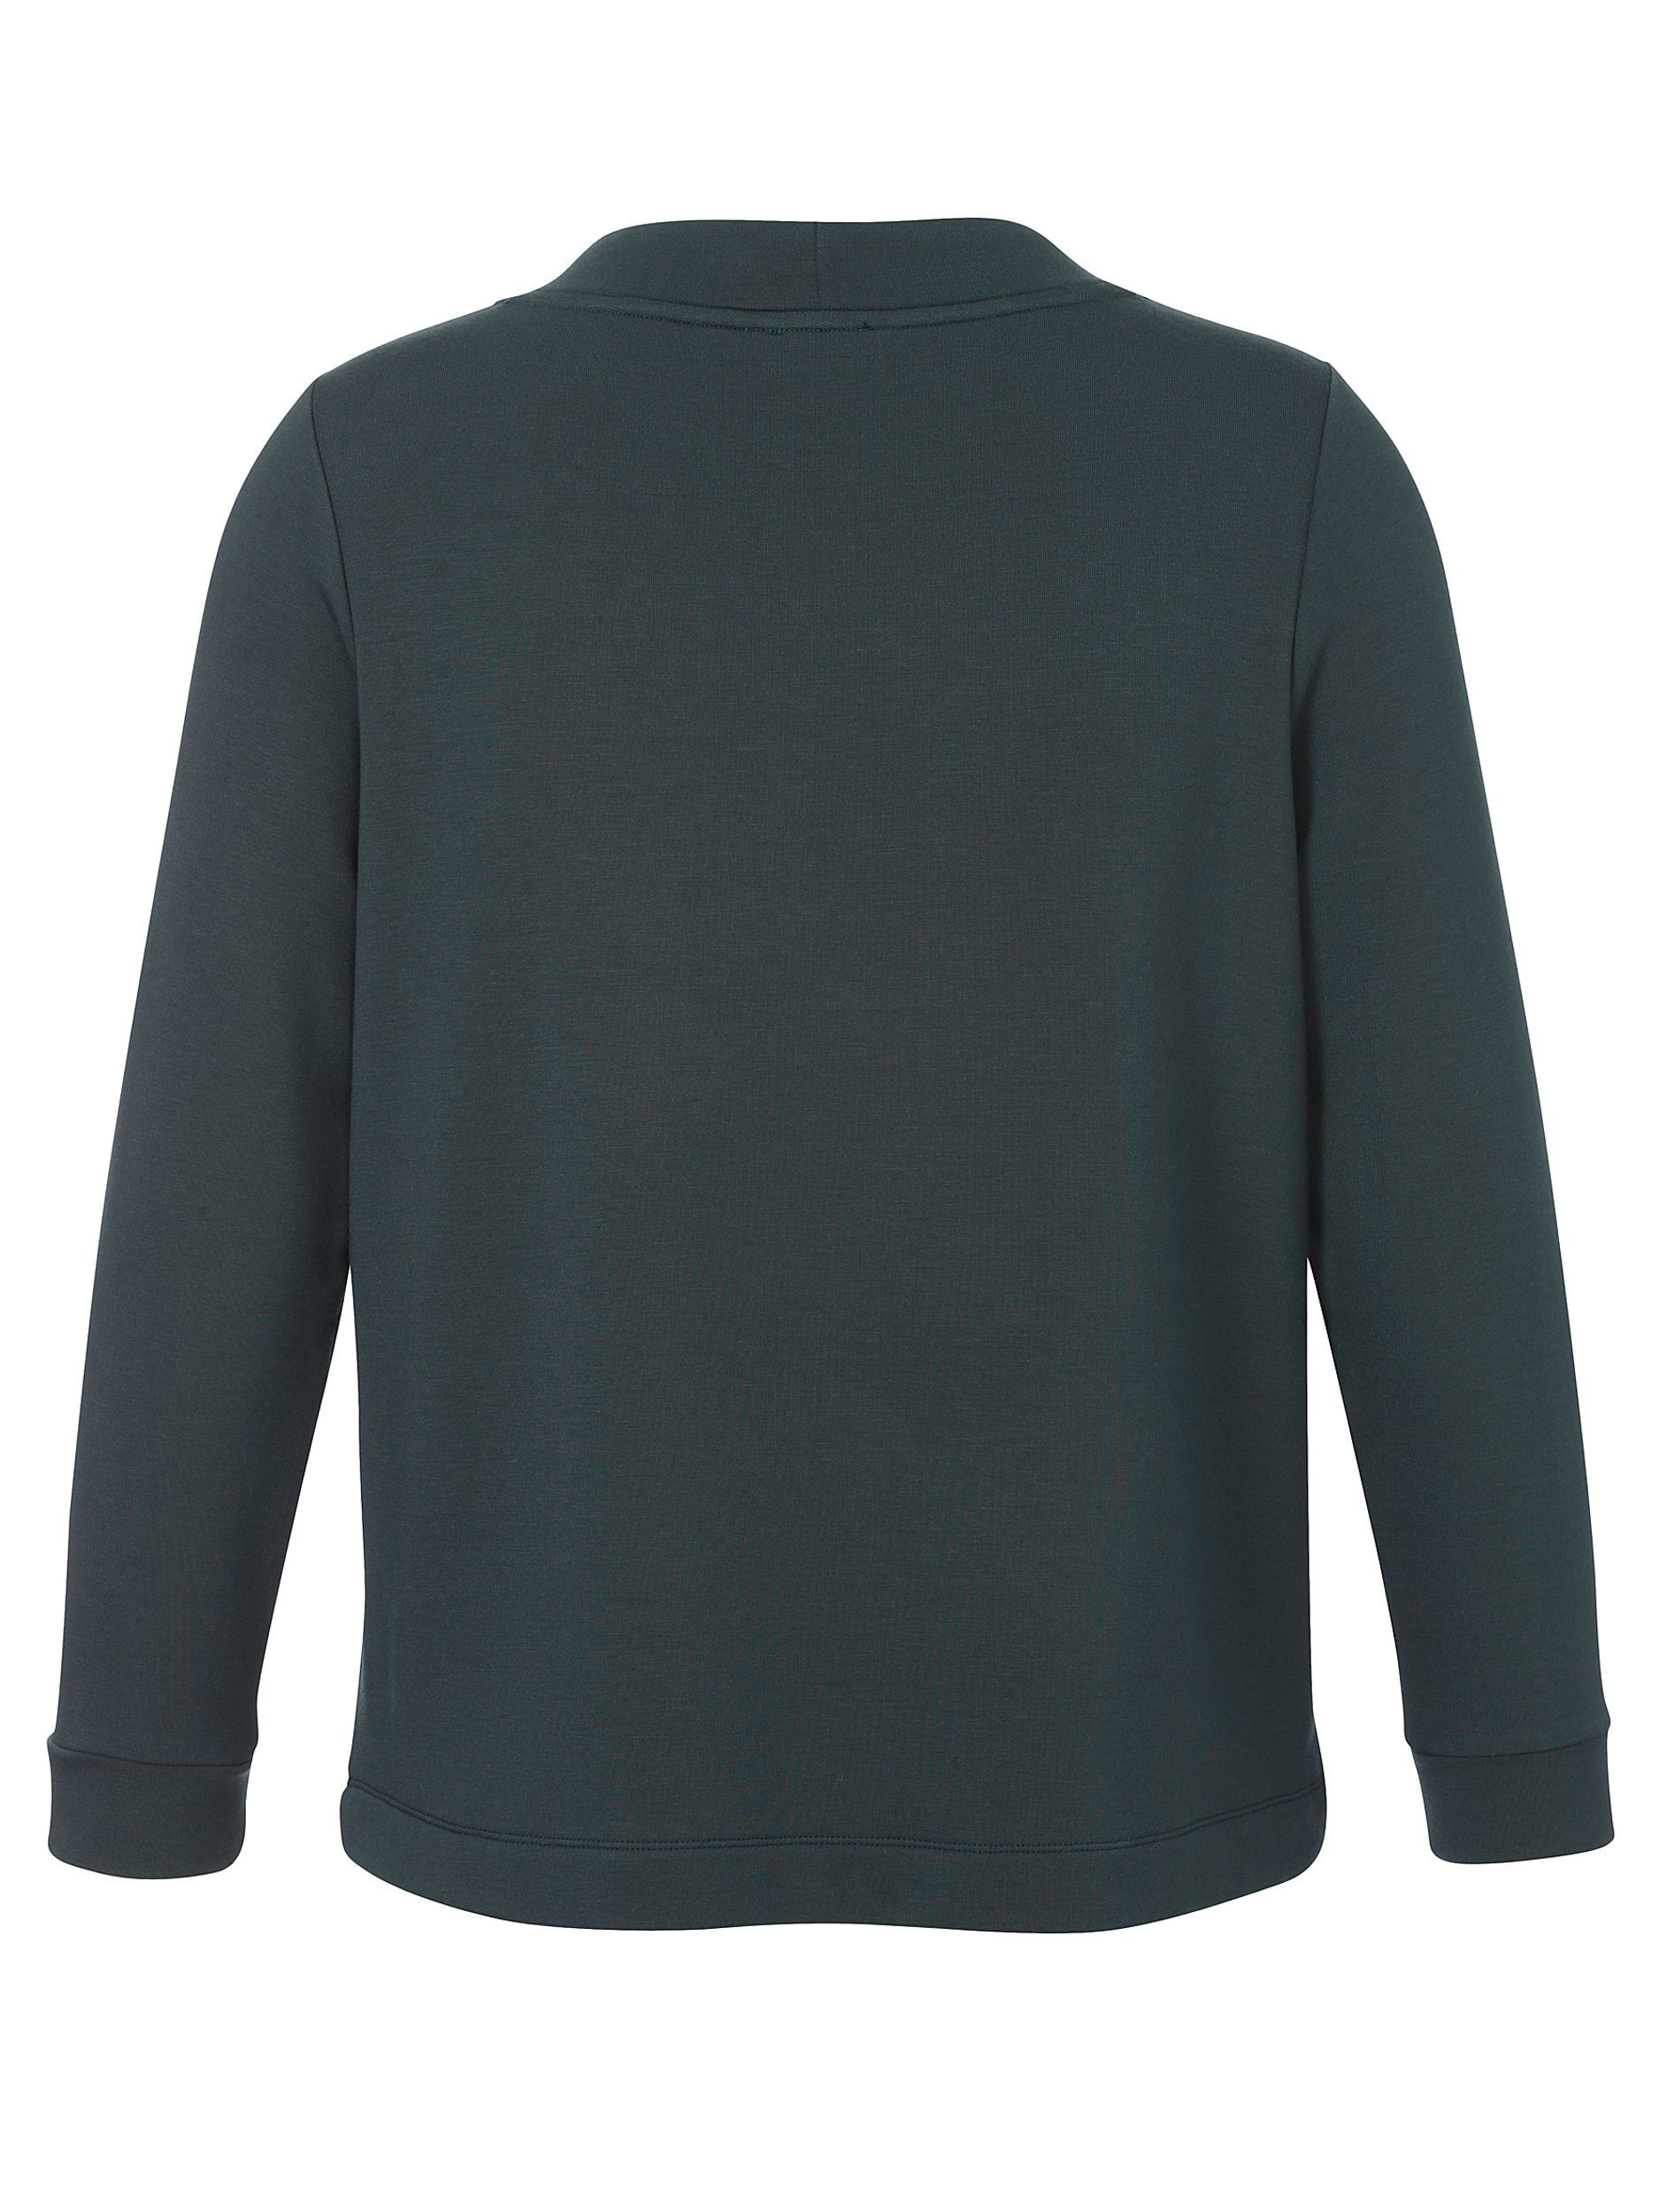  |  Sweatshirt Stehkragen 1/1 Arm Motiv | 50 | khaki